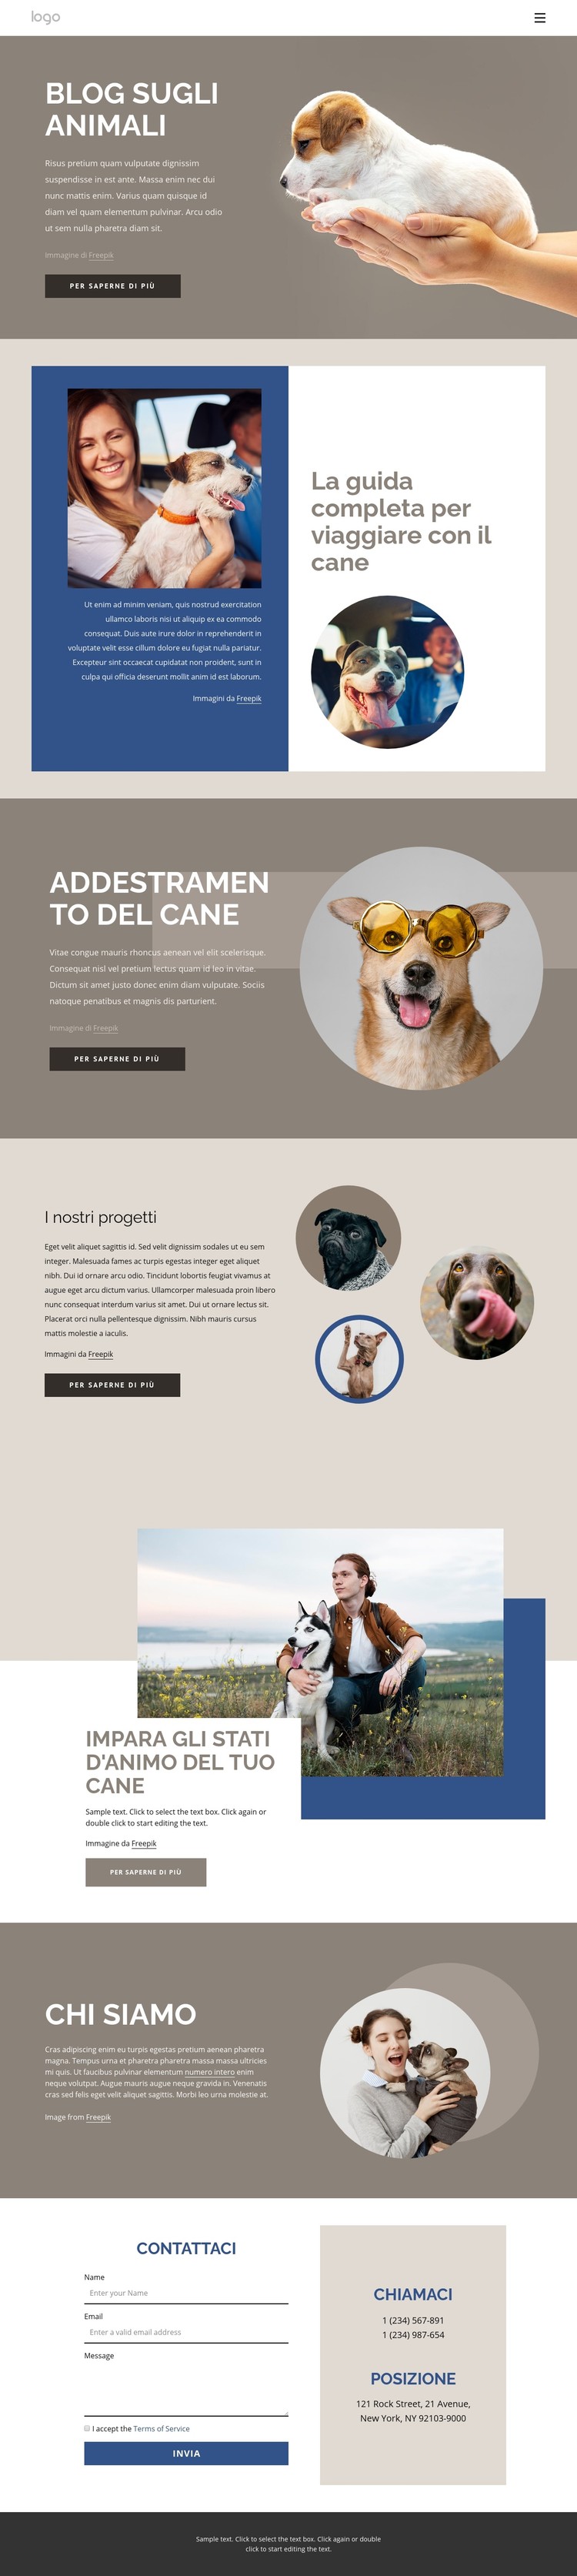 Blog sugli animali domestici Modello CSS